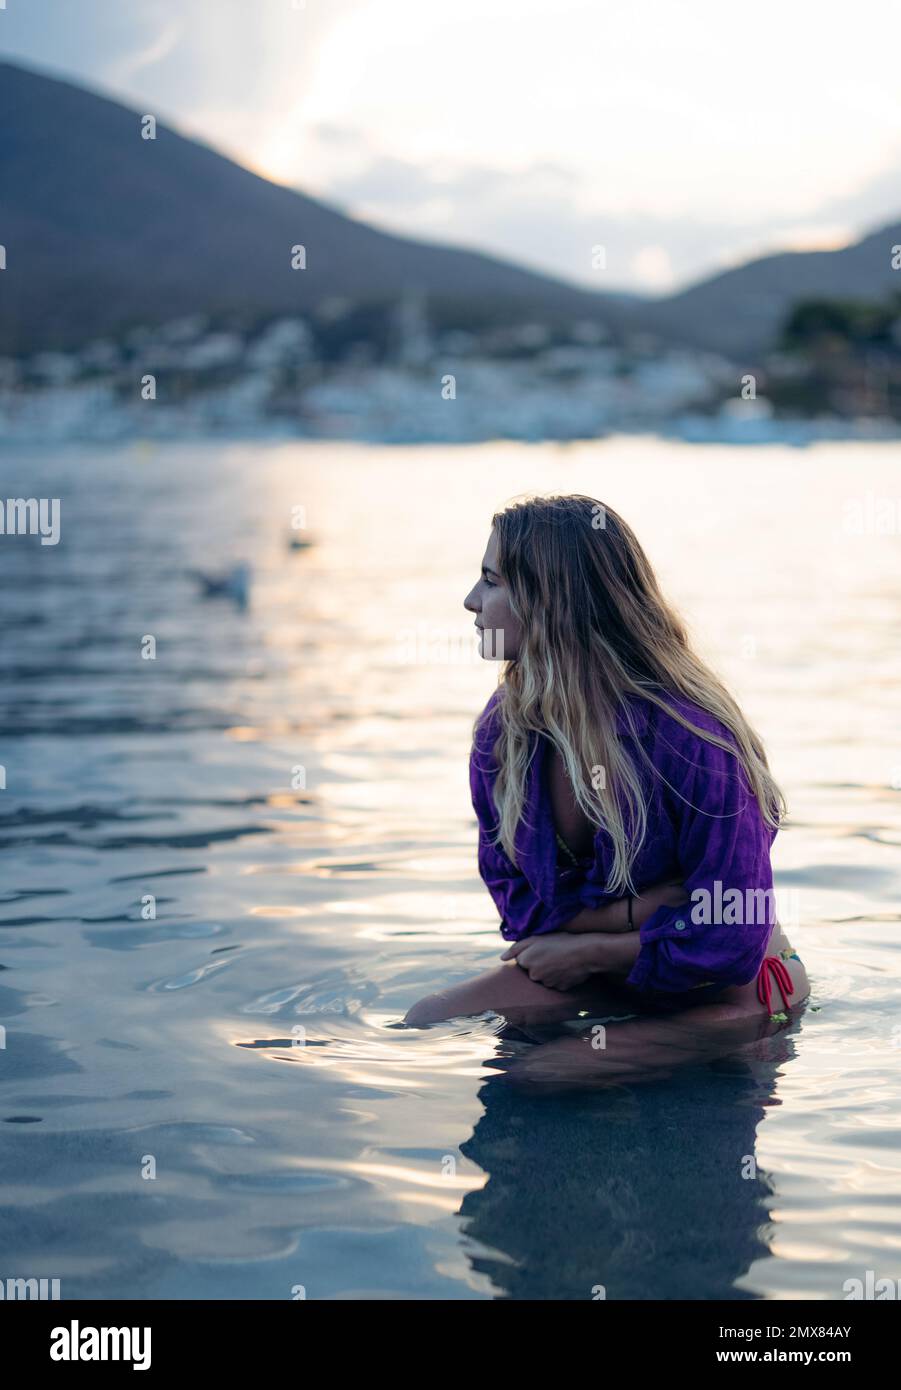 Jeune femme rêveuse avec de longs cheveux blonds dans le bikini et chemise pourpre assis dans les eaux peu profondes de la mer et regardant loin sur la plage de Cadaques au coucher du soleil Banque D'Images